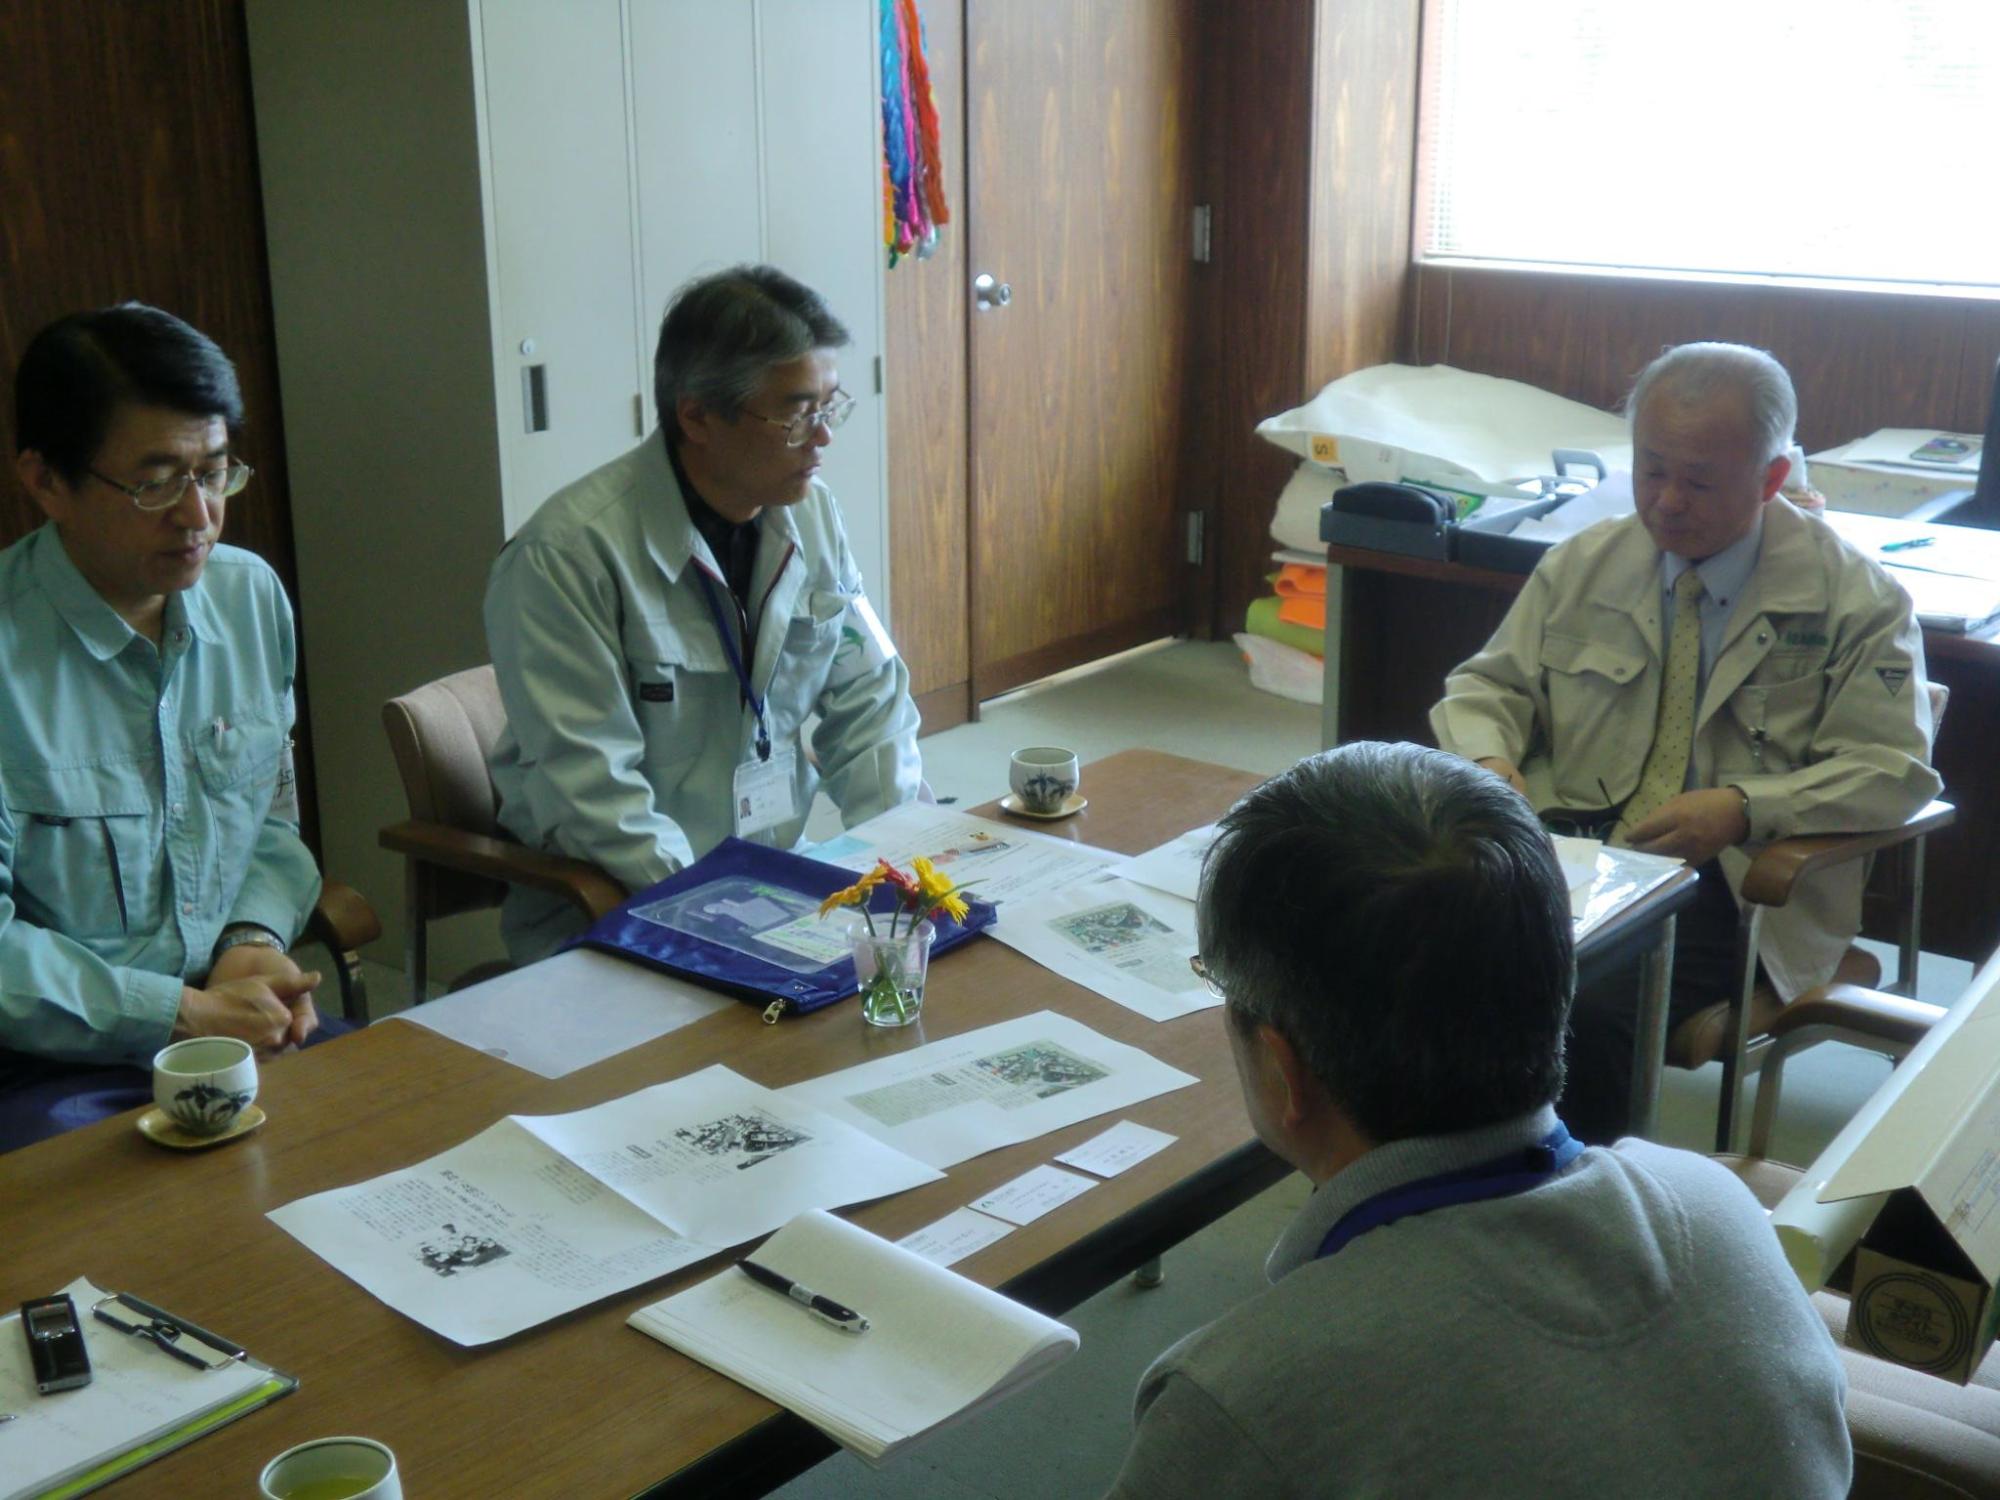 井戸川町長と調査団の3名が資料が置かれた机を囲んで座り、話をしている写真